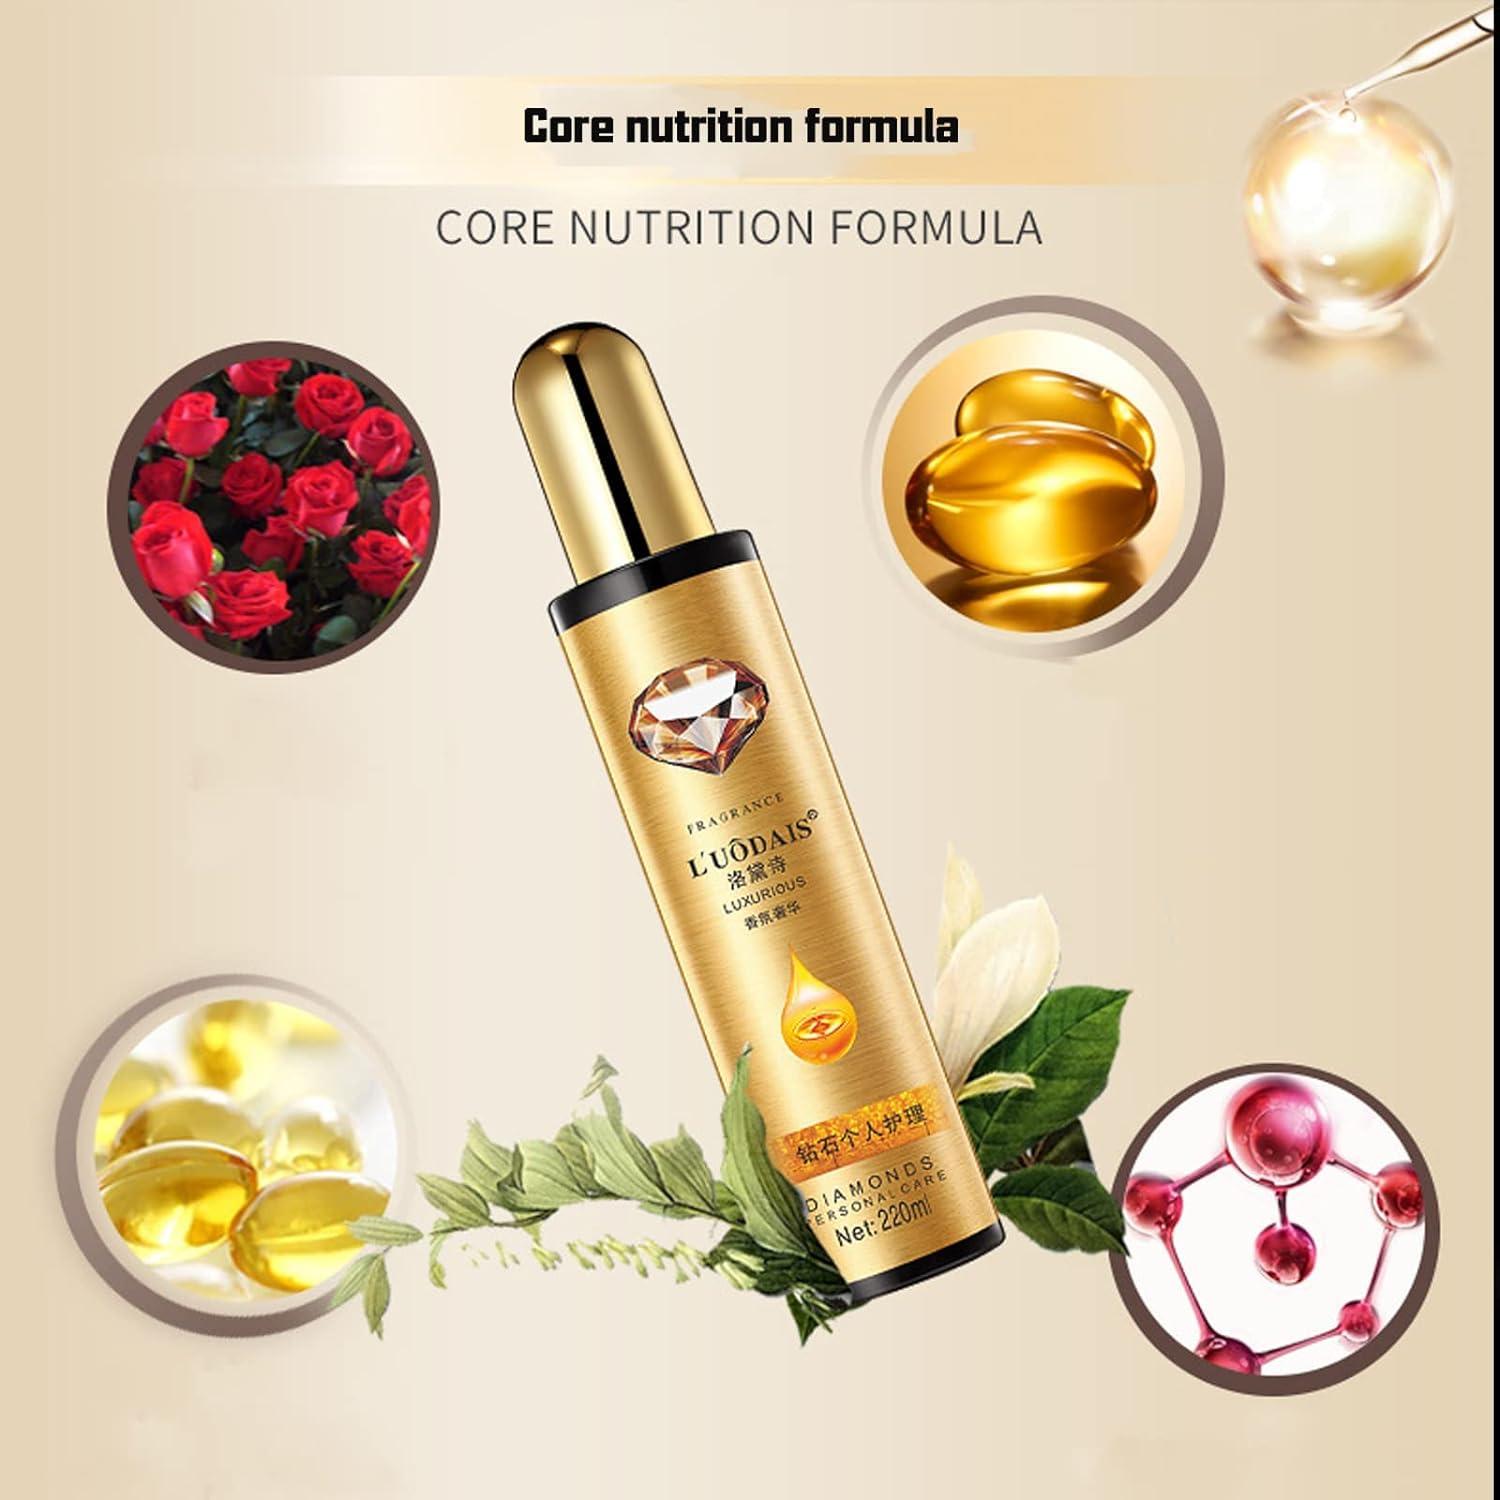 Golden Lure Pheromone Hair Oil, Long Lasting Golden Lure Pheromone